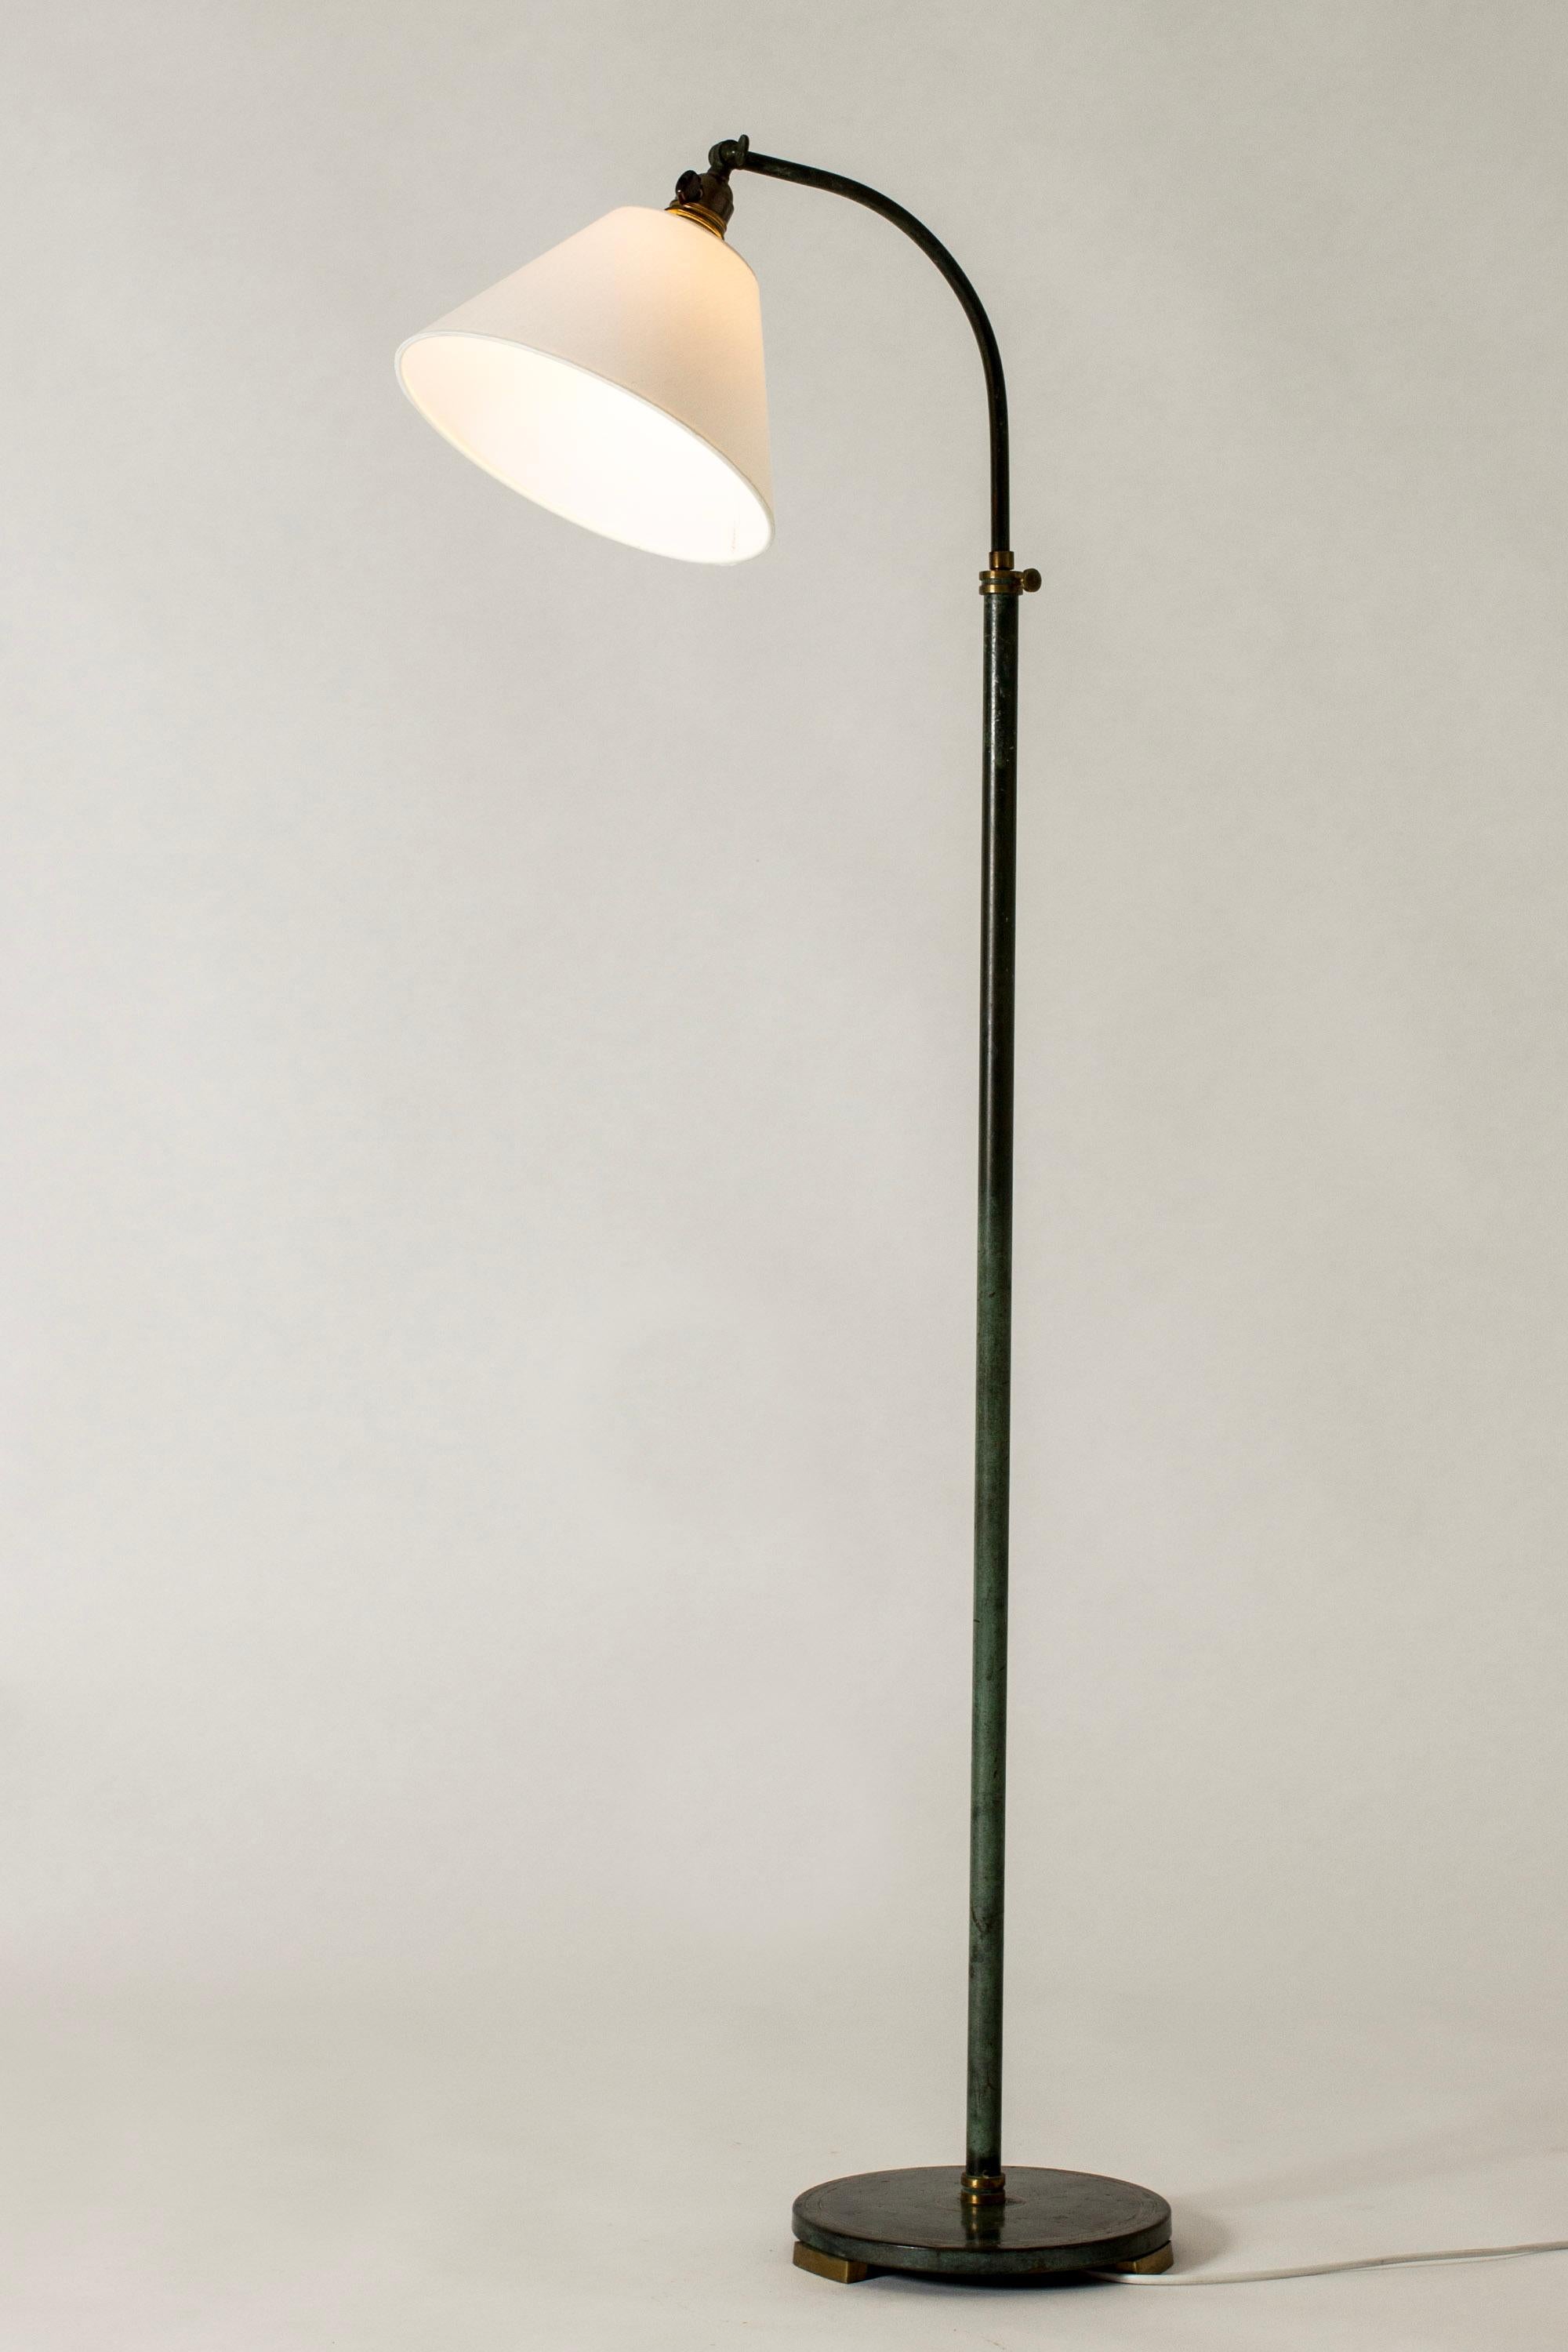 Elegant lampadaire suédois Art Déco, en bronze patiné vert foncé. Détails et décor en or bruni. Hauteur réglable.